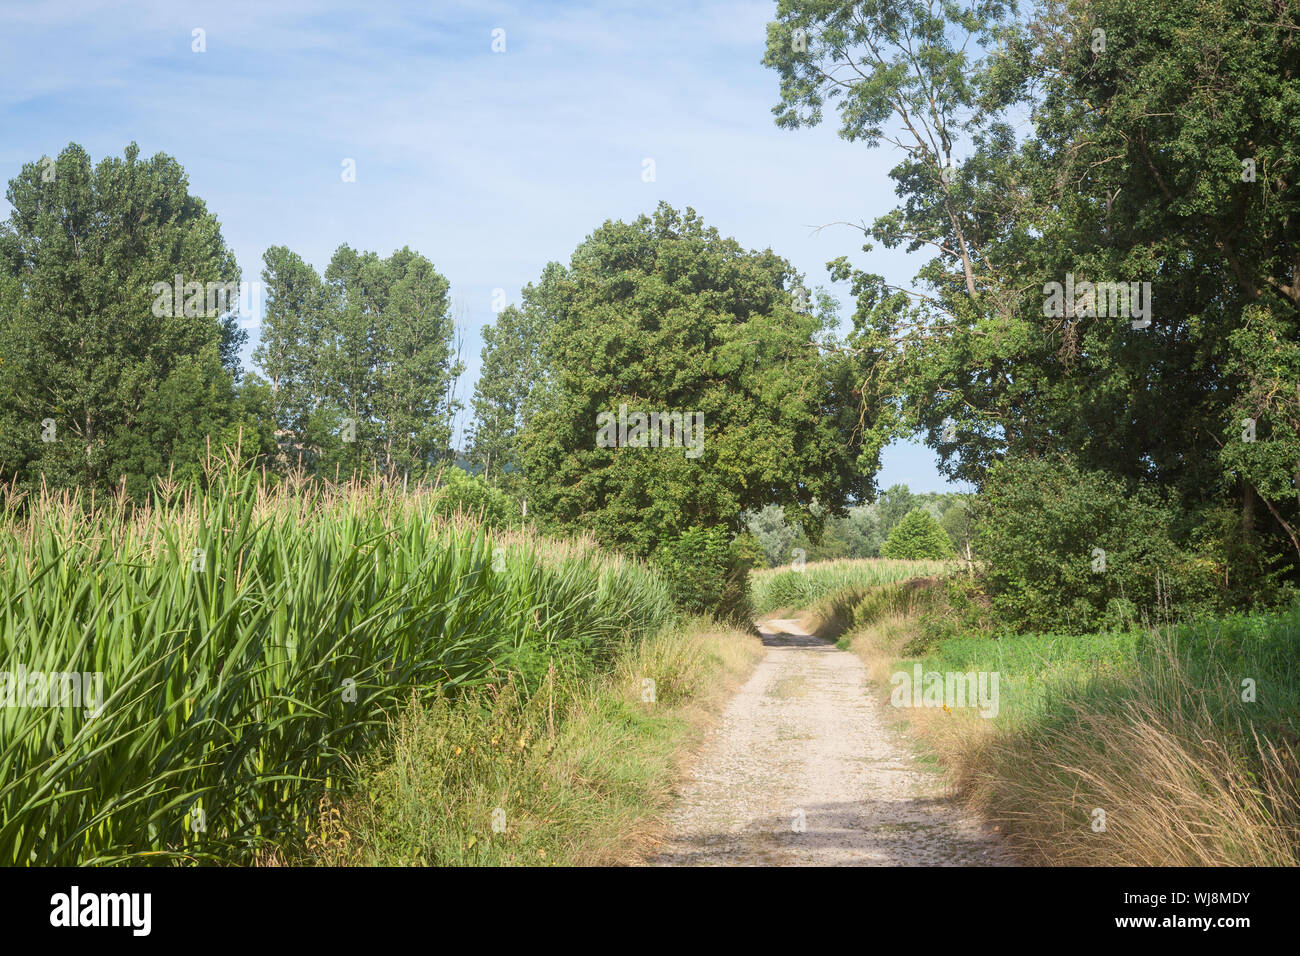 Typisch französische dirt road, einen Weg in die Landschaft von Frankreich, mit Pflanzen und Felder bereit, in einem landwirtschaftlich genutzten Gebiet des Landes duri geerntet zu werden. Stockfoto